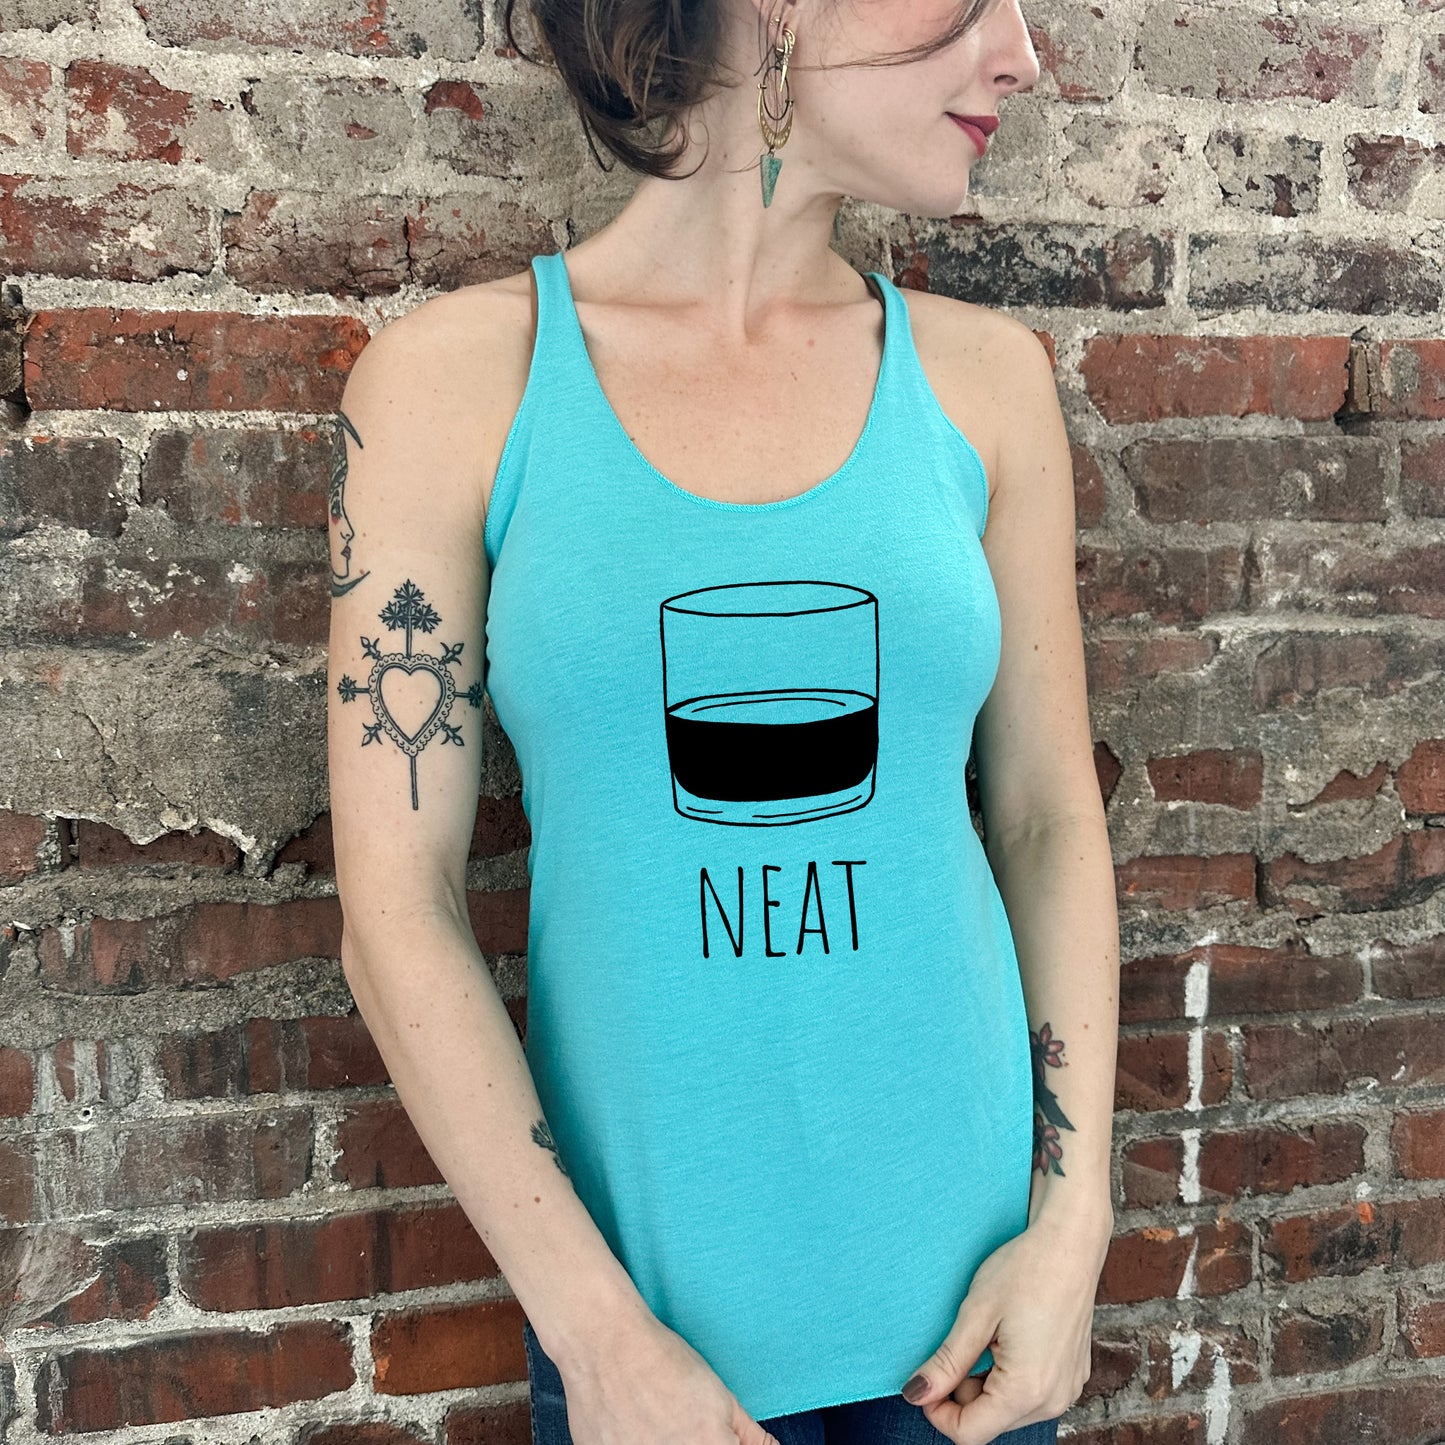 Neat (Whiskey) - Women's Tank - Heather Gray, Tahiti, or Envy